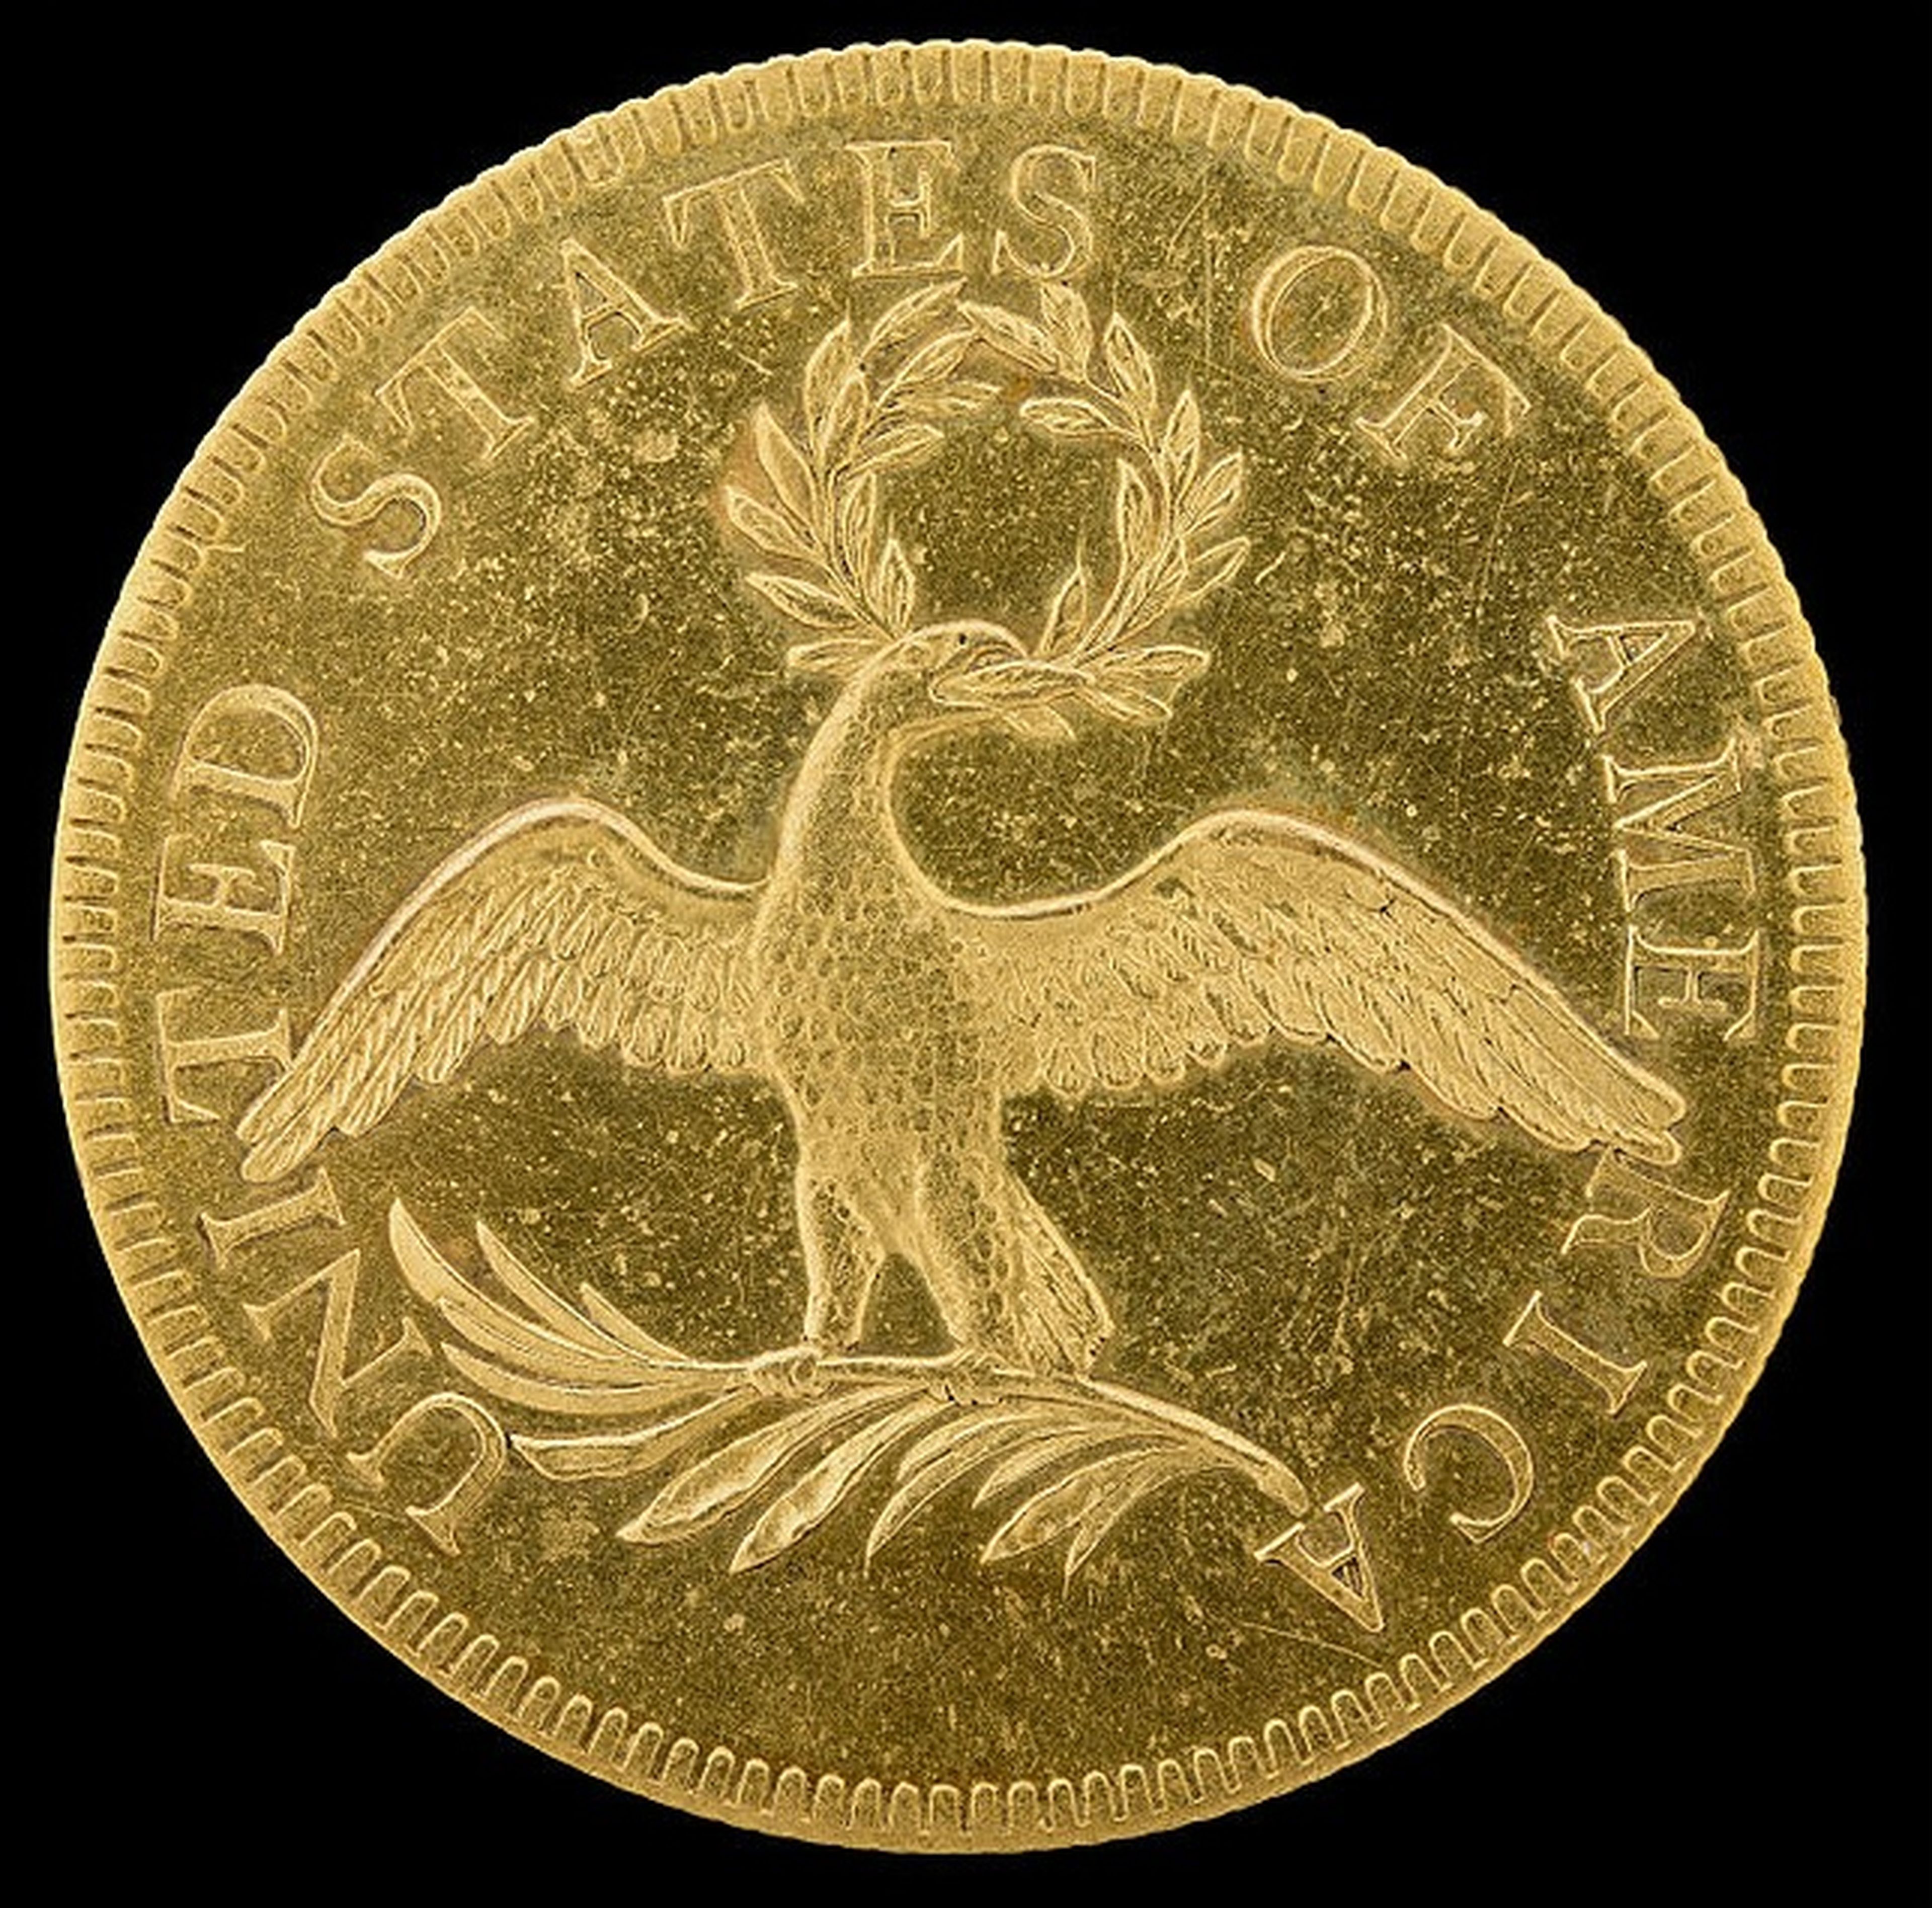 Eagle gold